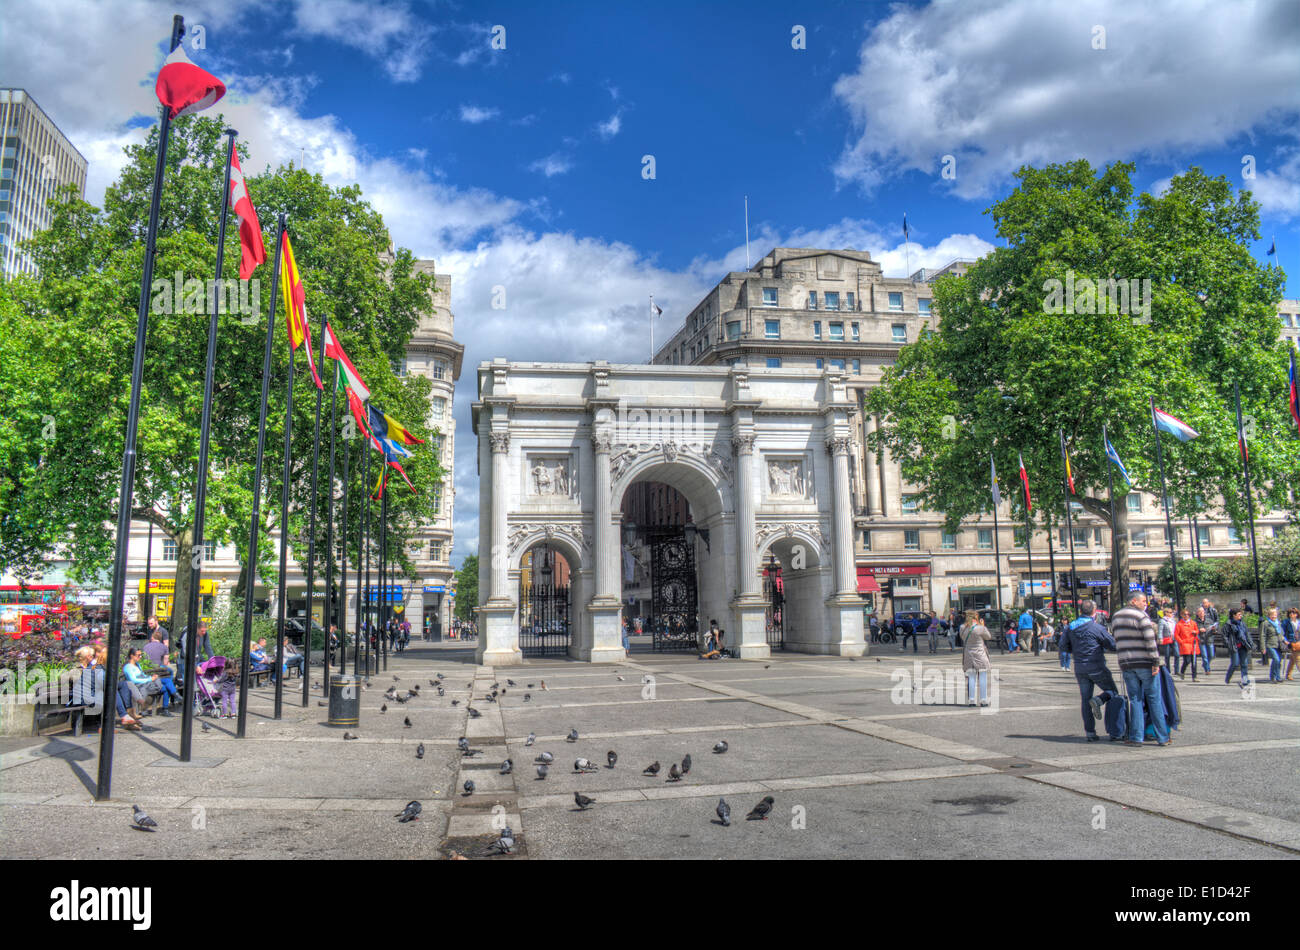 Immagine hdr di Marble Arch, in centro a Londra Foto Stock